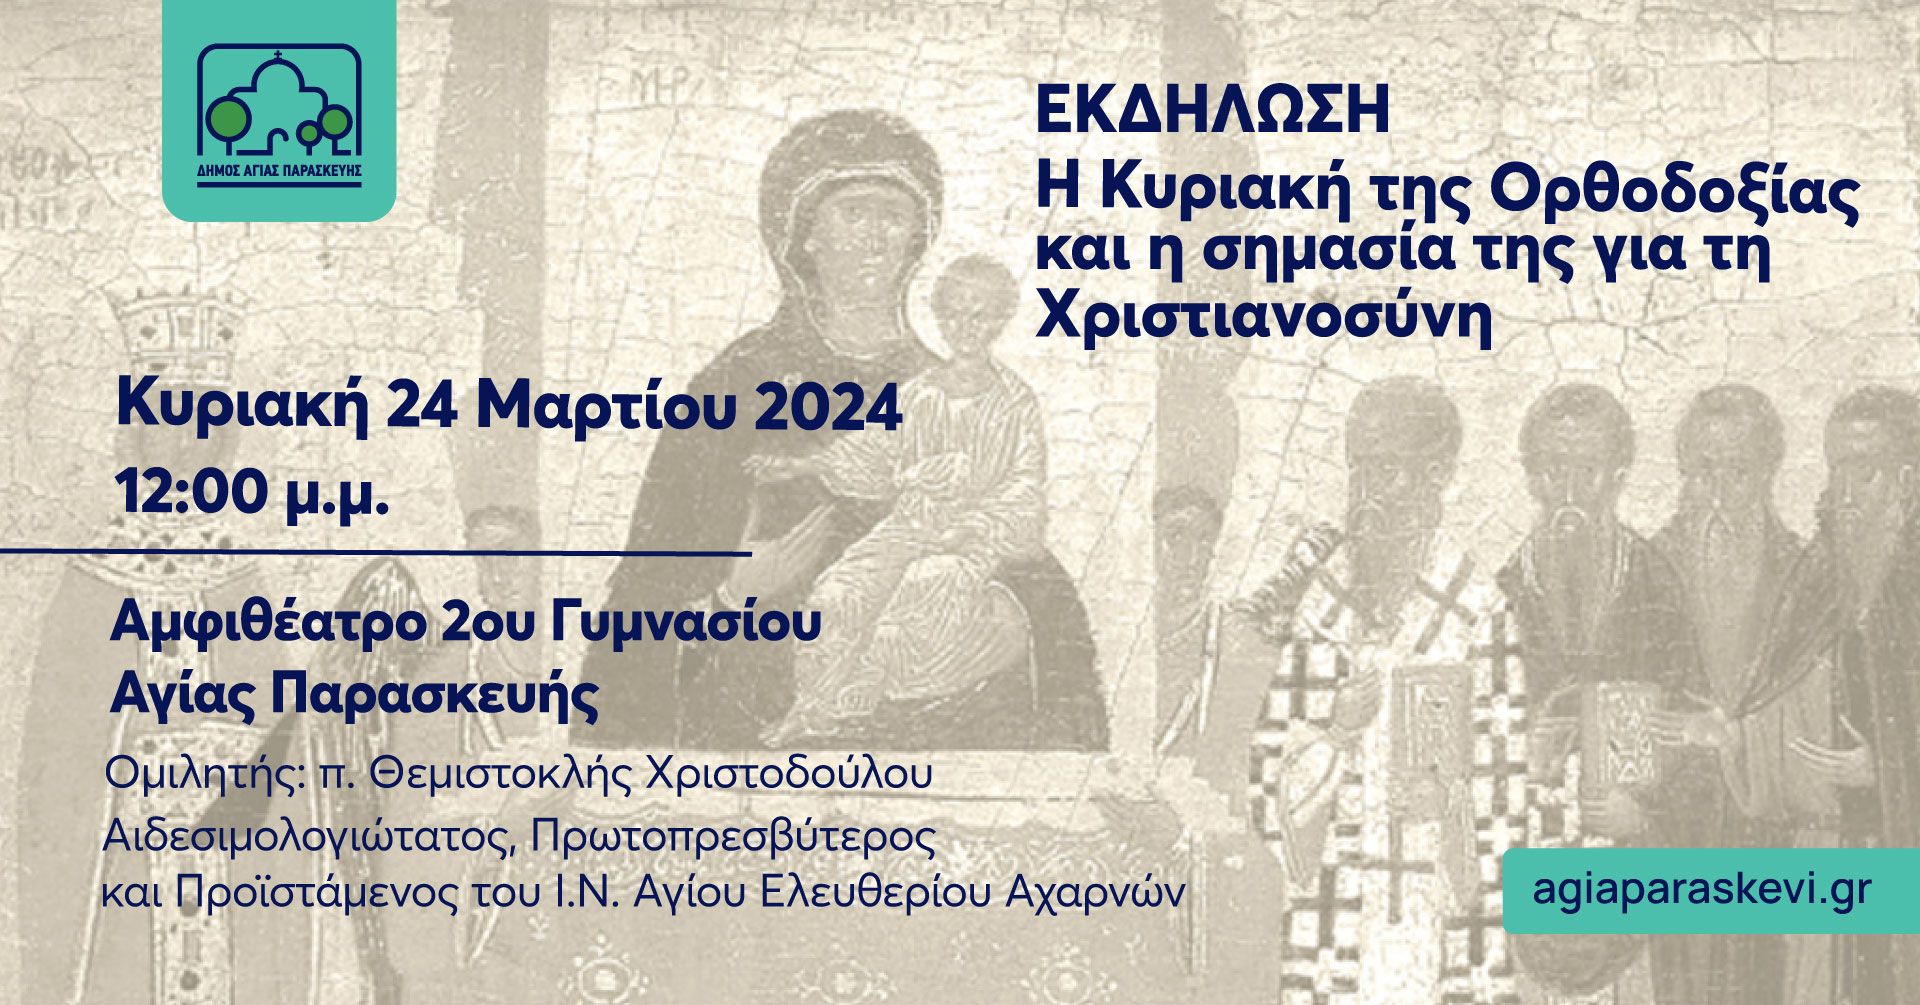 Εκδήλωση για τον εορτασμό της Κυριακής της Ορθοδοξίας